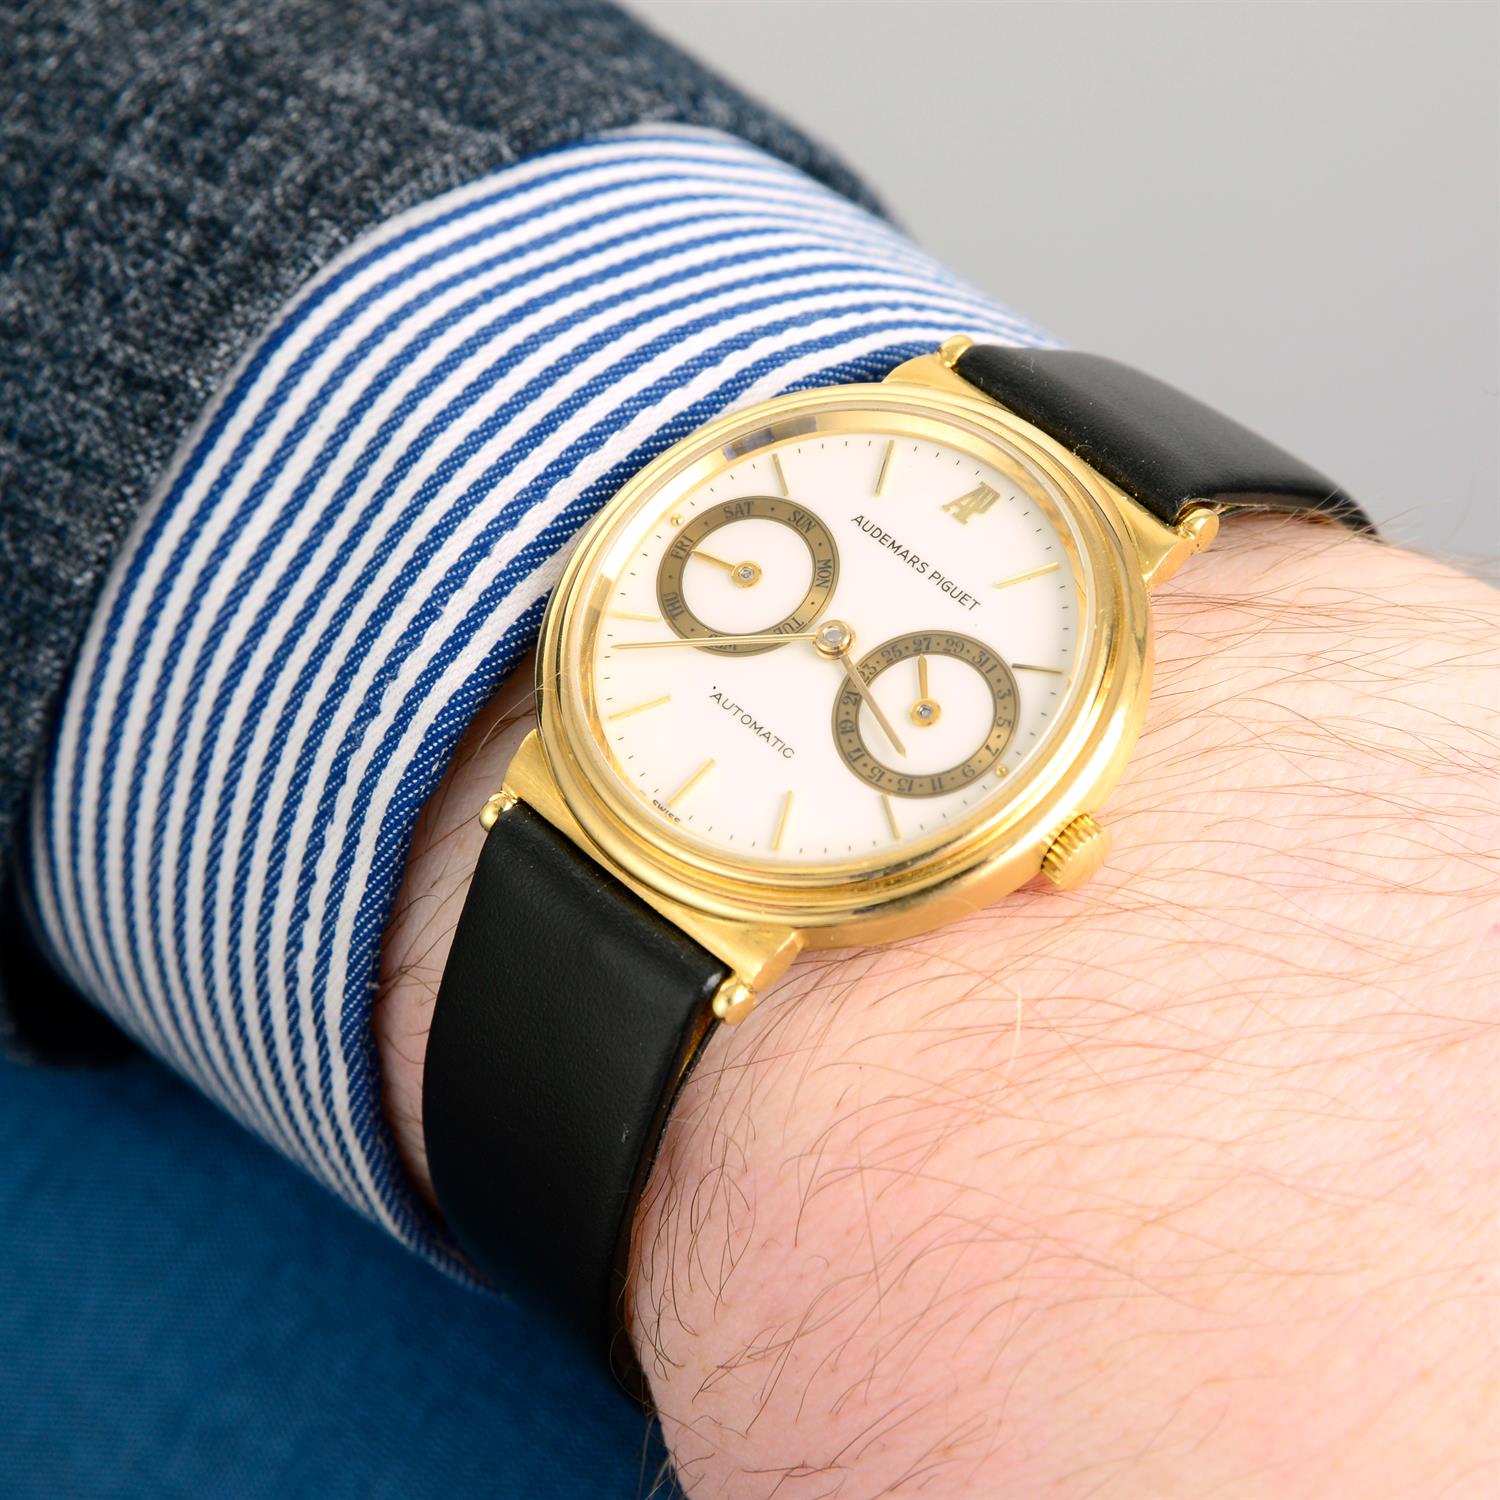 AUDEMARS PIGUET - a yellow metal wrist watch, 33mm. - Image 6 of 6